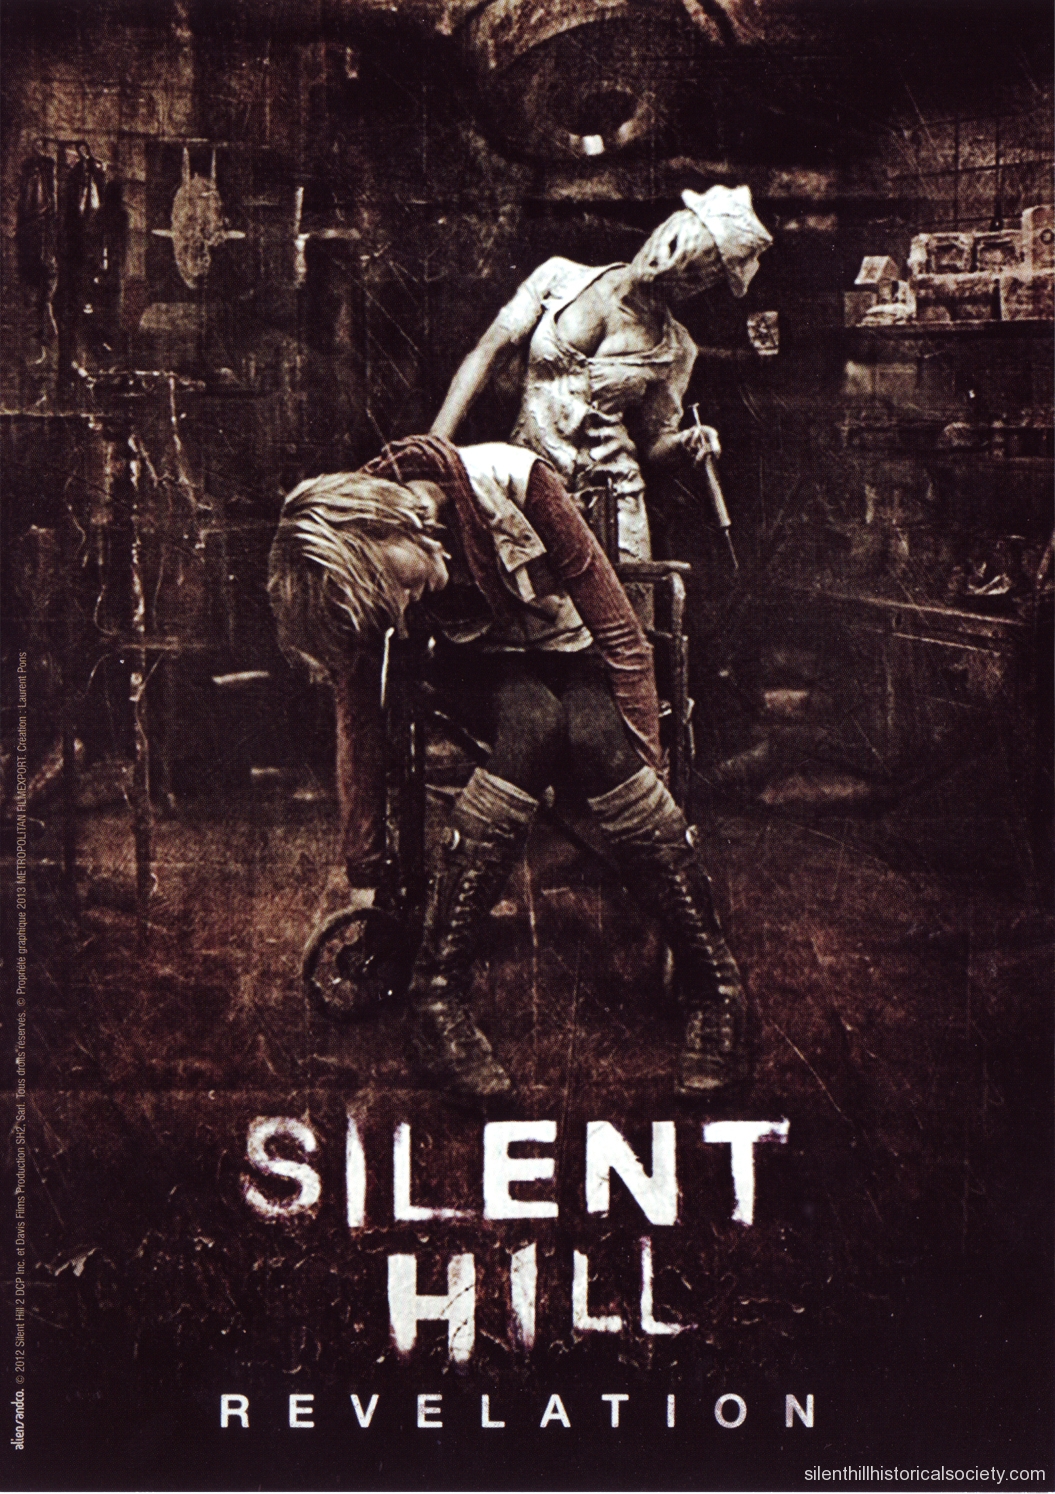 La historia de Silent Hill 2 se convertirá en una película!